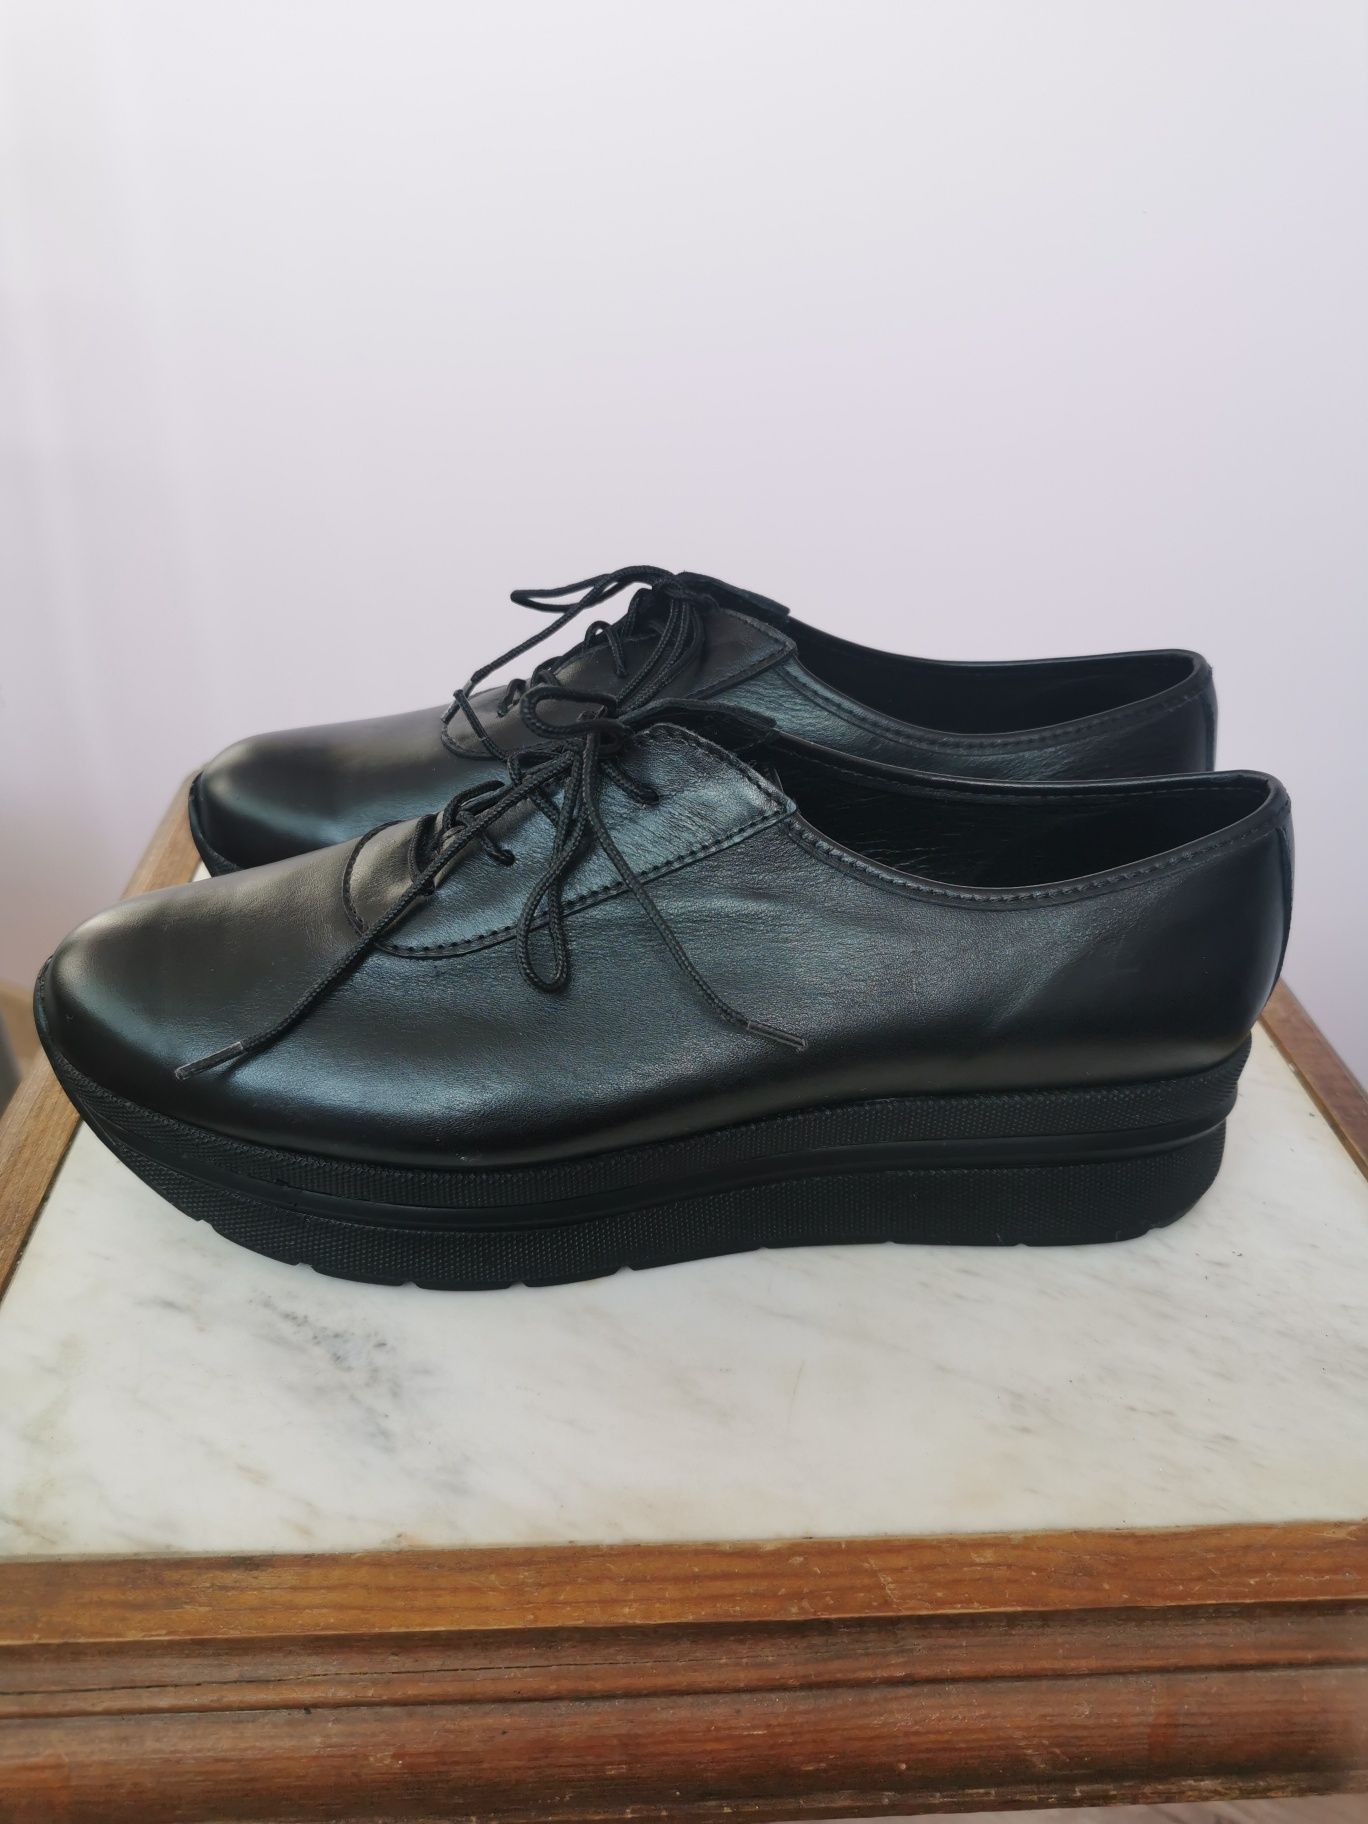 Български обувки от естествена кожа, р-р 40